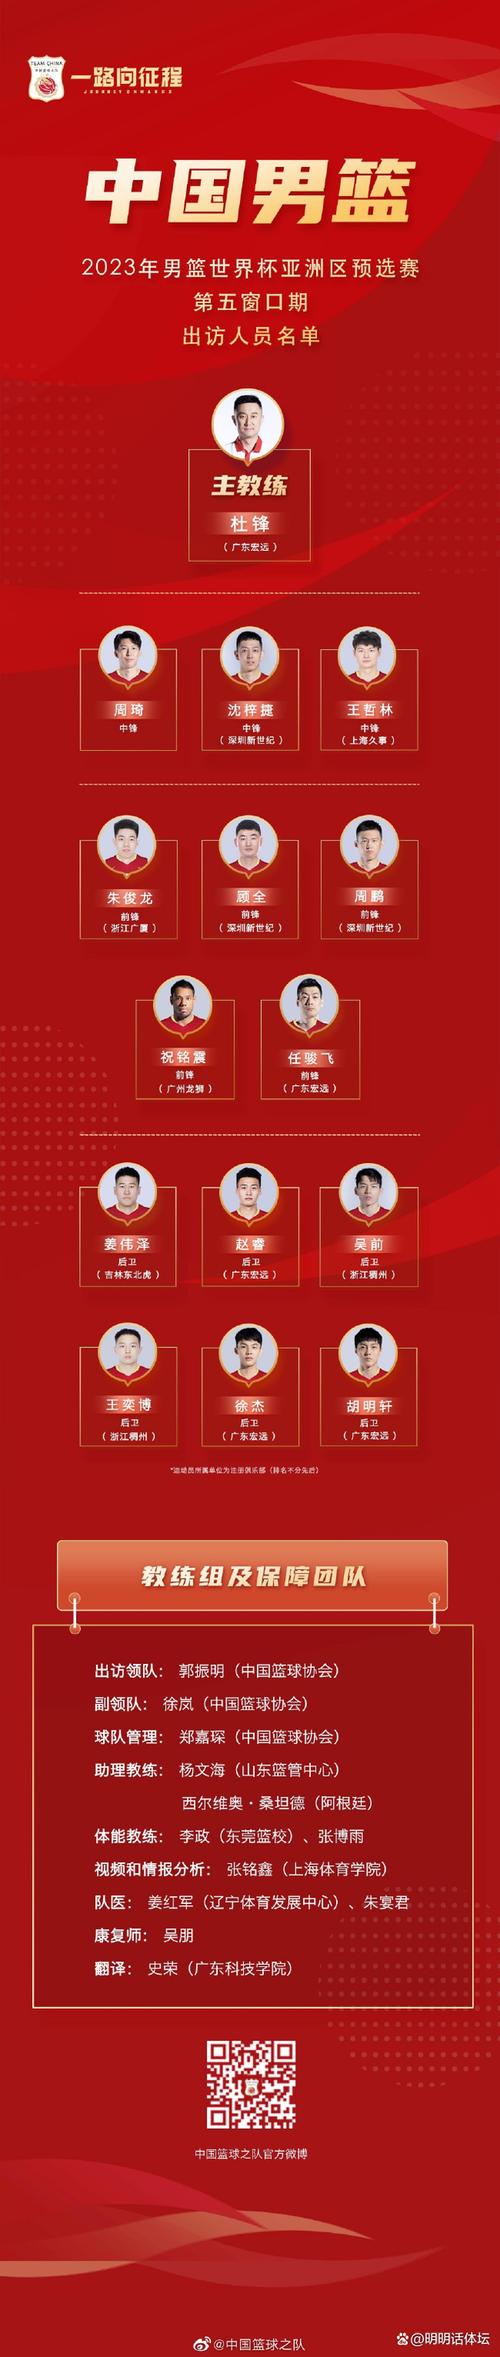 男篮世预赛中国队14人名单确定 杜锋清者自清无需洗白也无法洗白